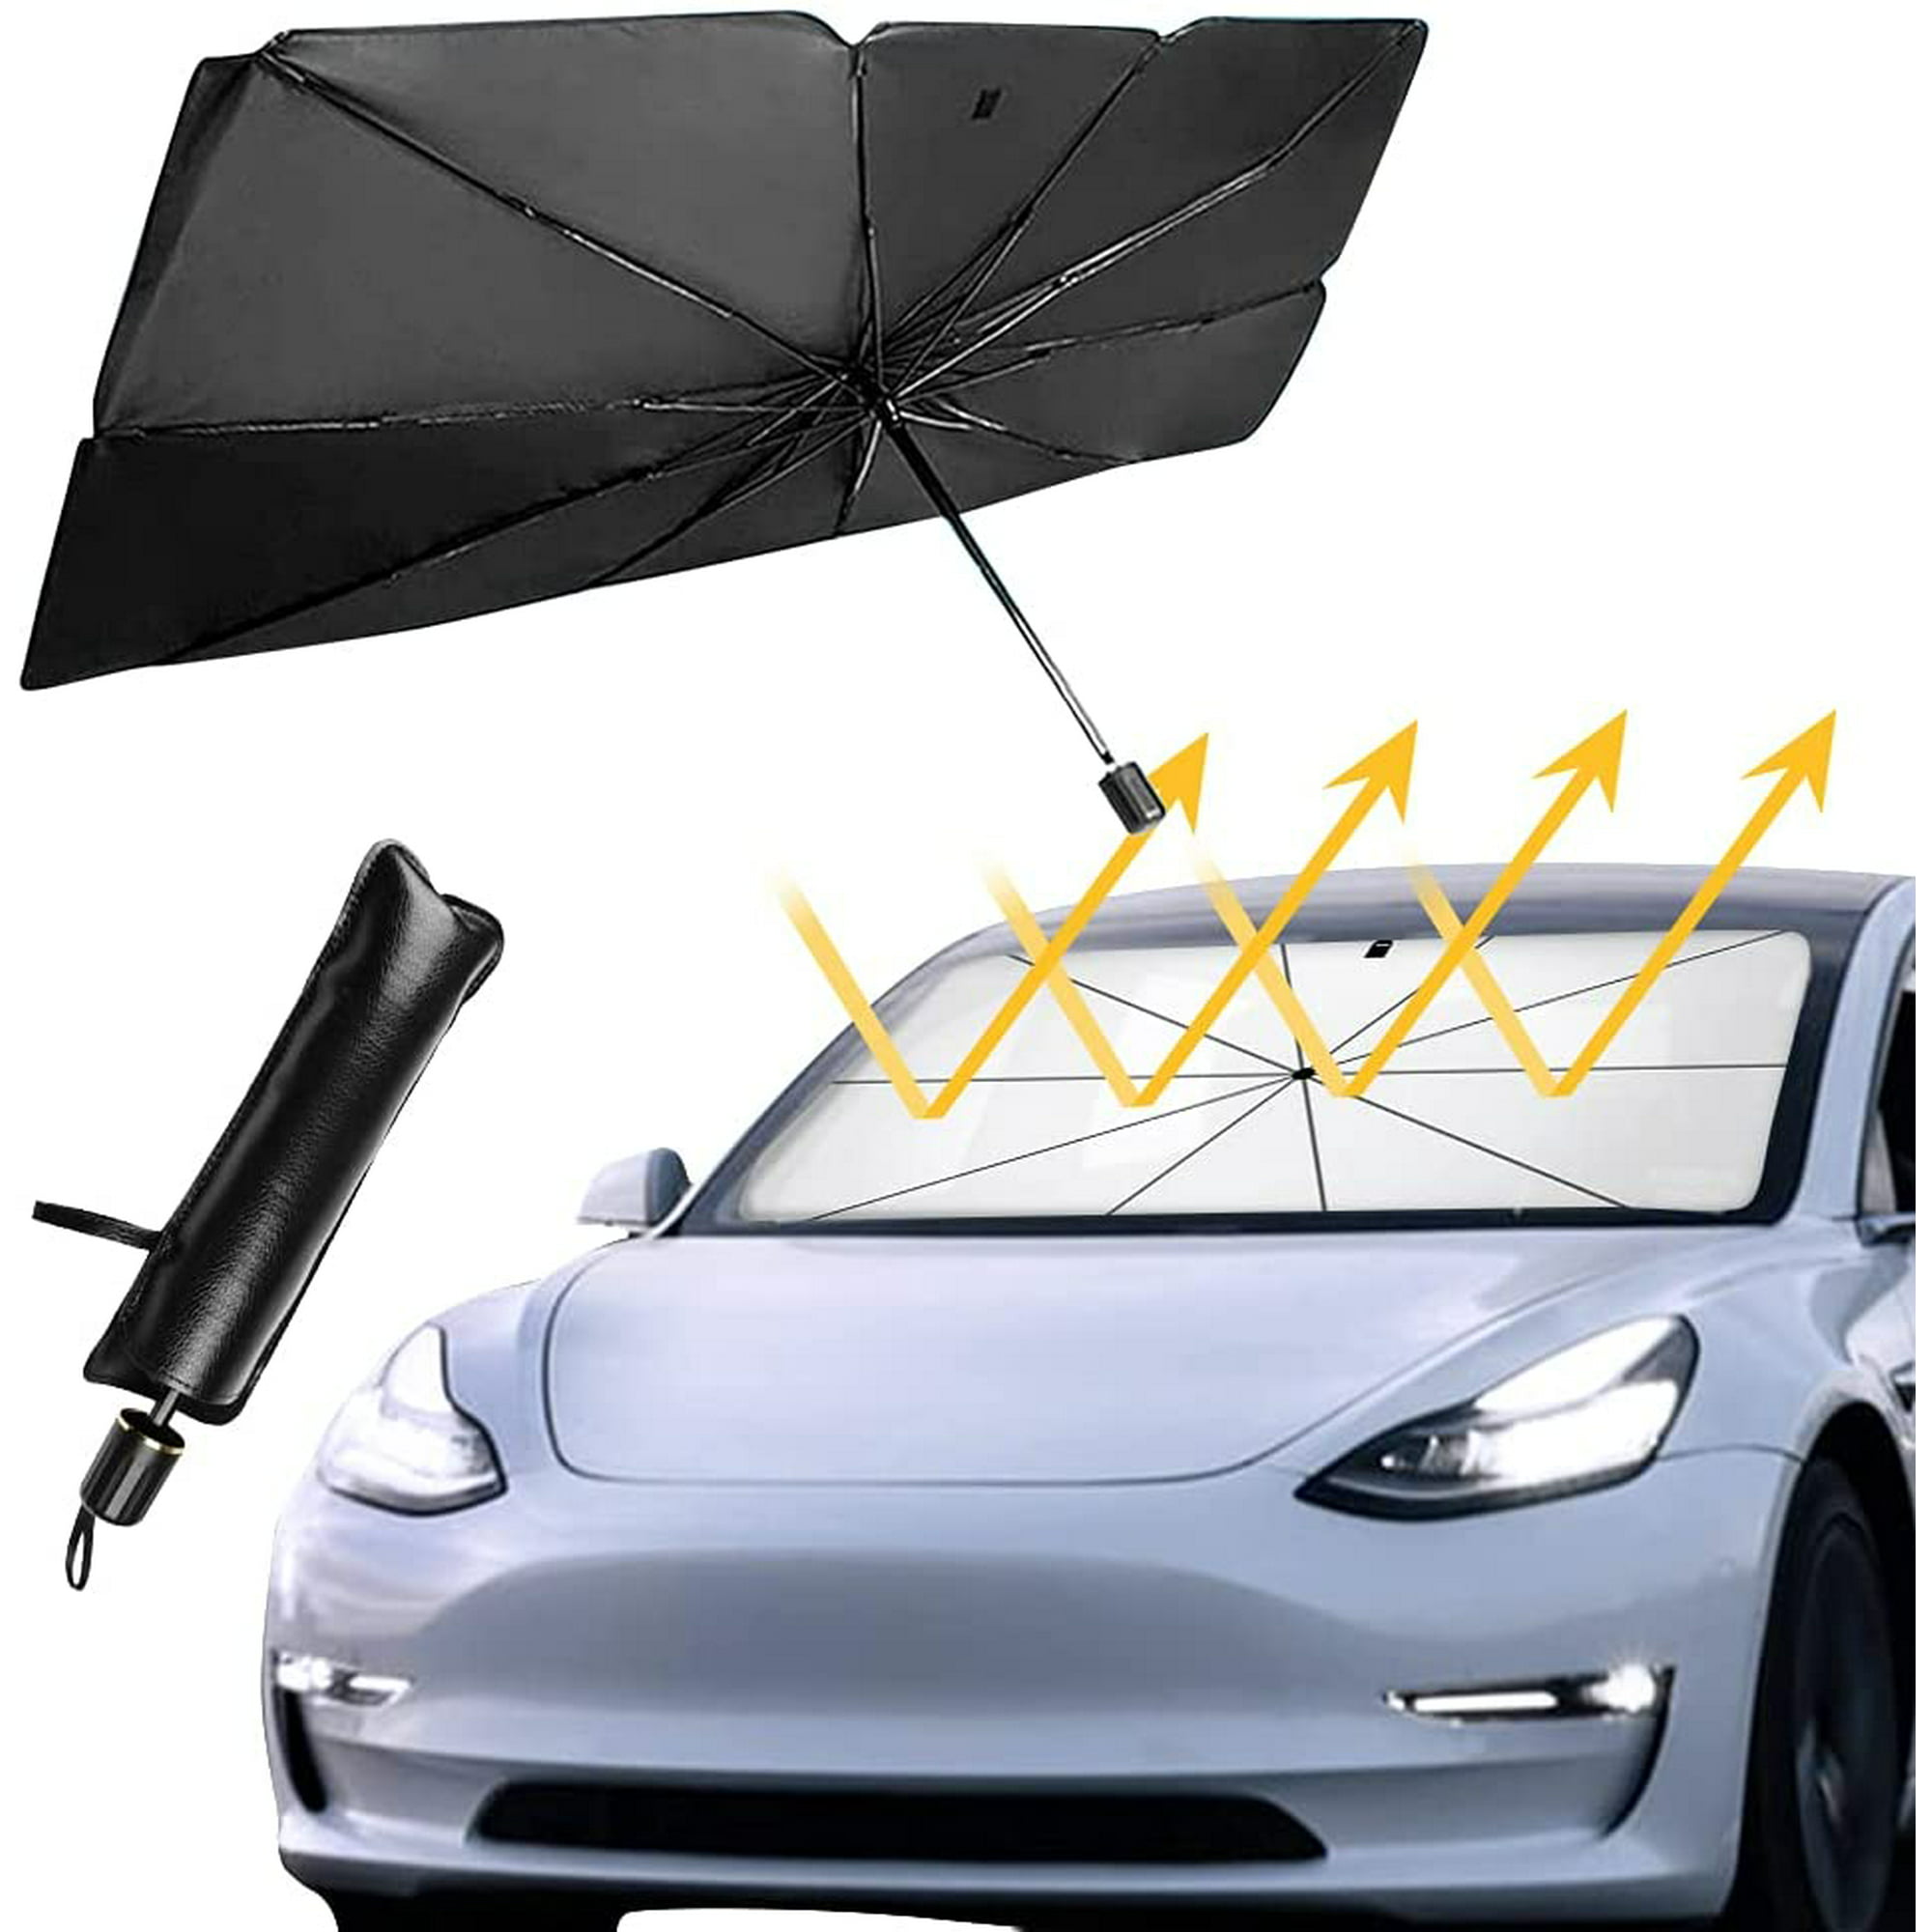  Parasol delantero para automóvil, portátil, plegable, fuerte,  resistente a los rayos UV y al calor, mantiene el automóvil fresco,  cubierta universal para parabrisas para automóvil, camión, SUV (L(59 x  31.51 pulgadas) 